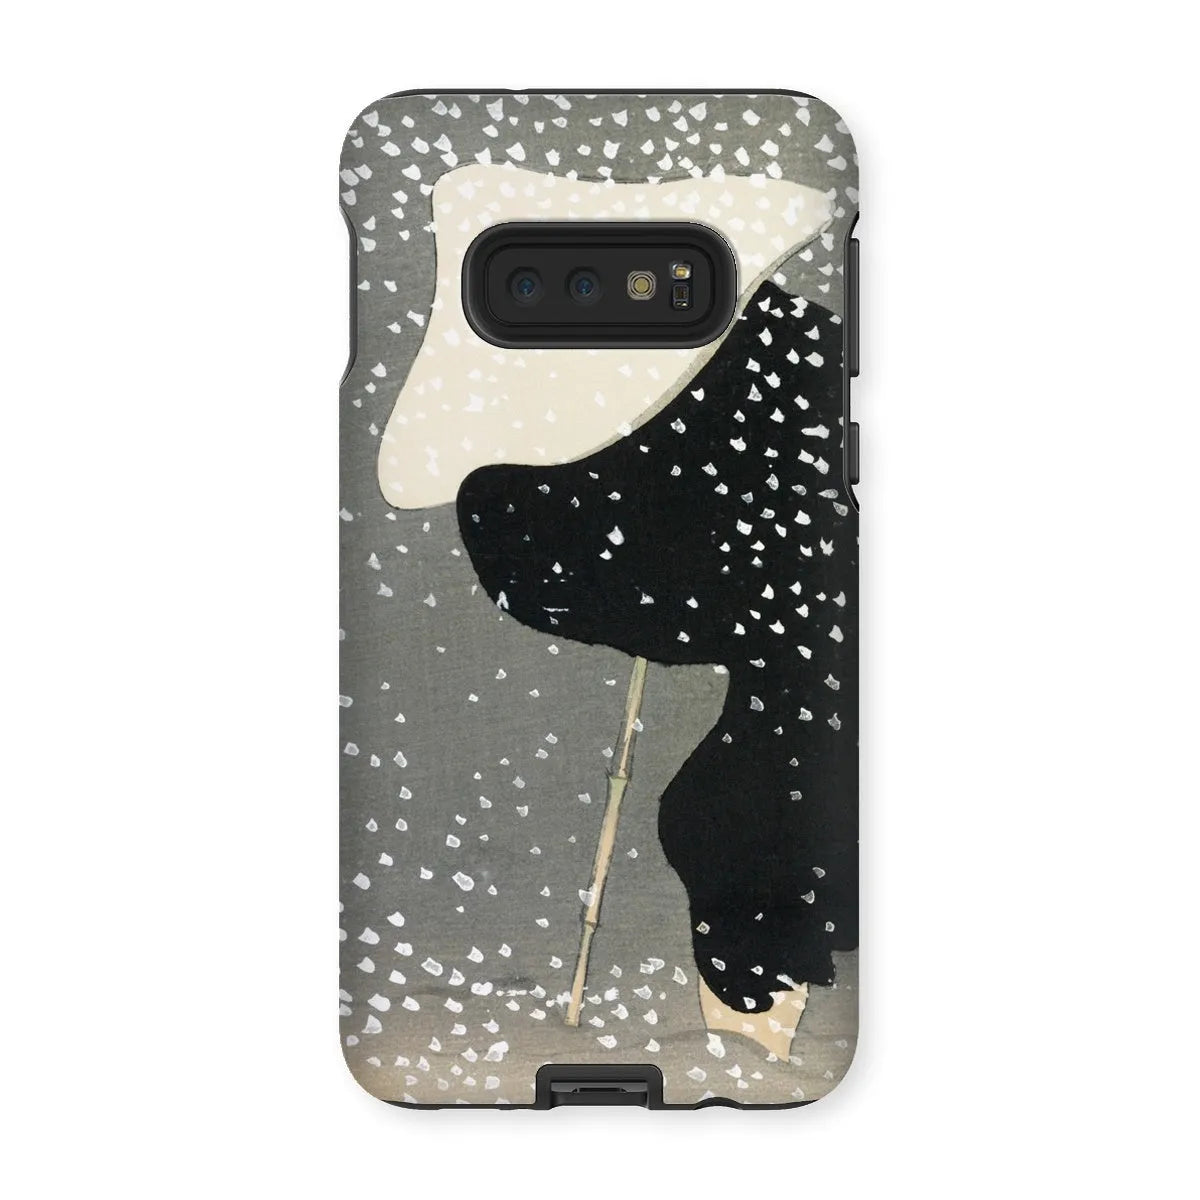 Snow - Japanese Meiji Art Phone Case - Kamisaka Sekka - Samsung Galaxy S10e / Matte - Mobile Phone Cases - Aesthetic Art